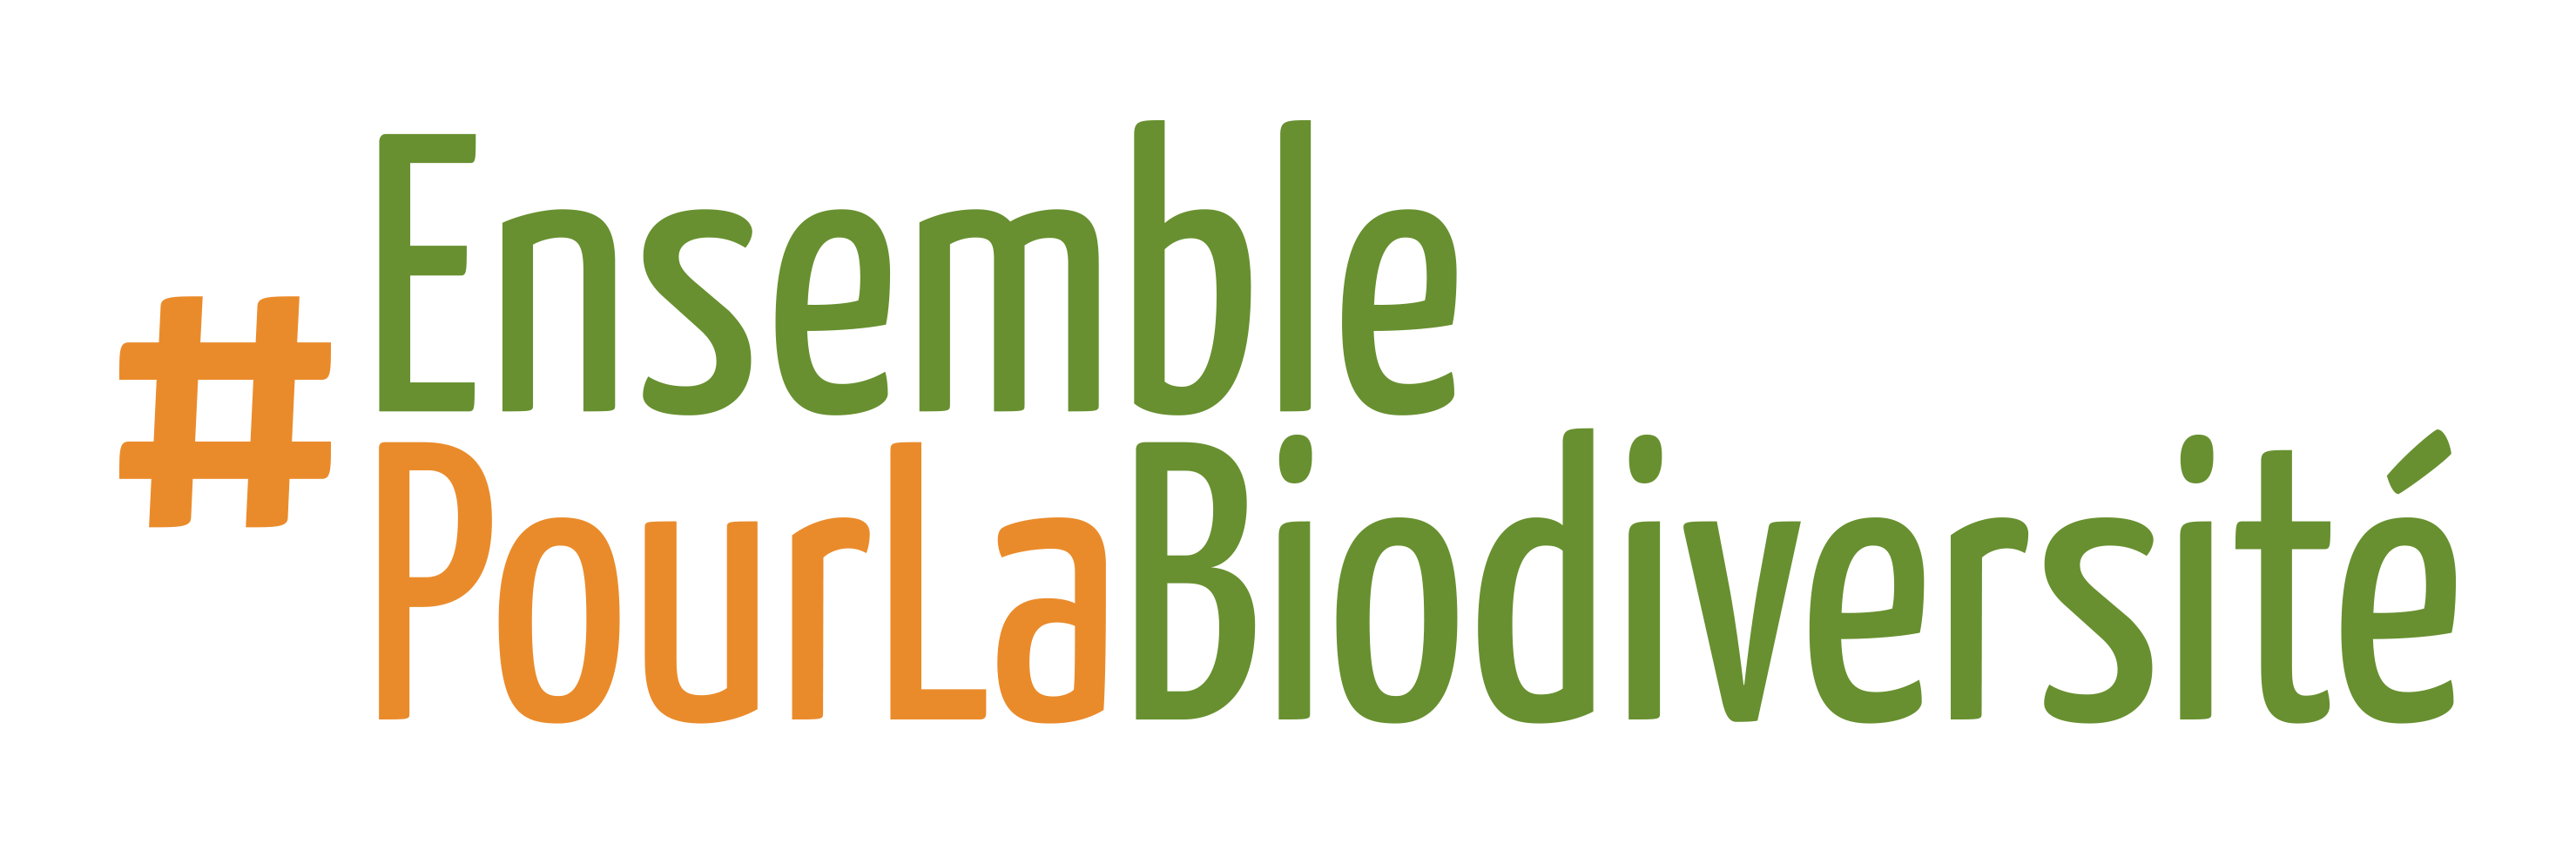 Hashtag Biodiversity fr